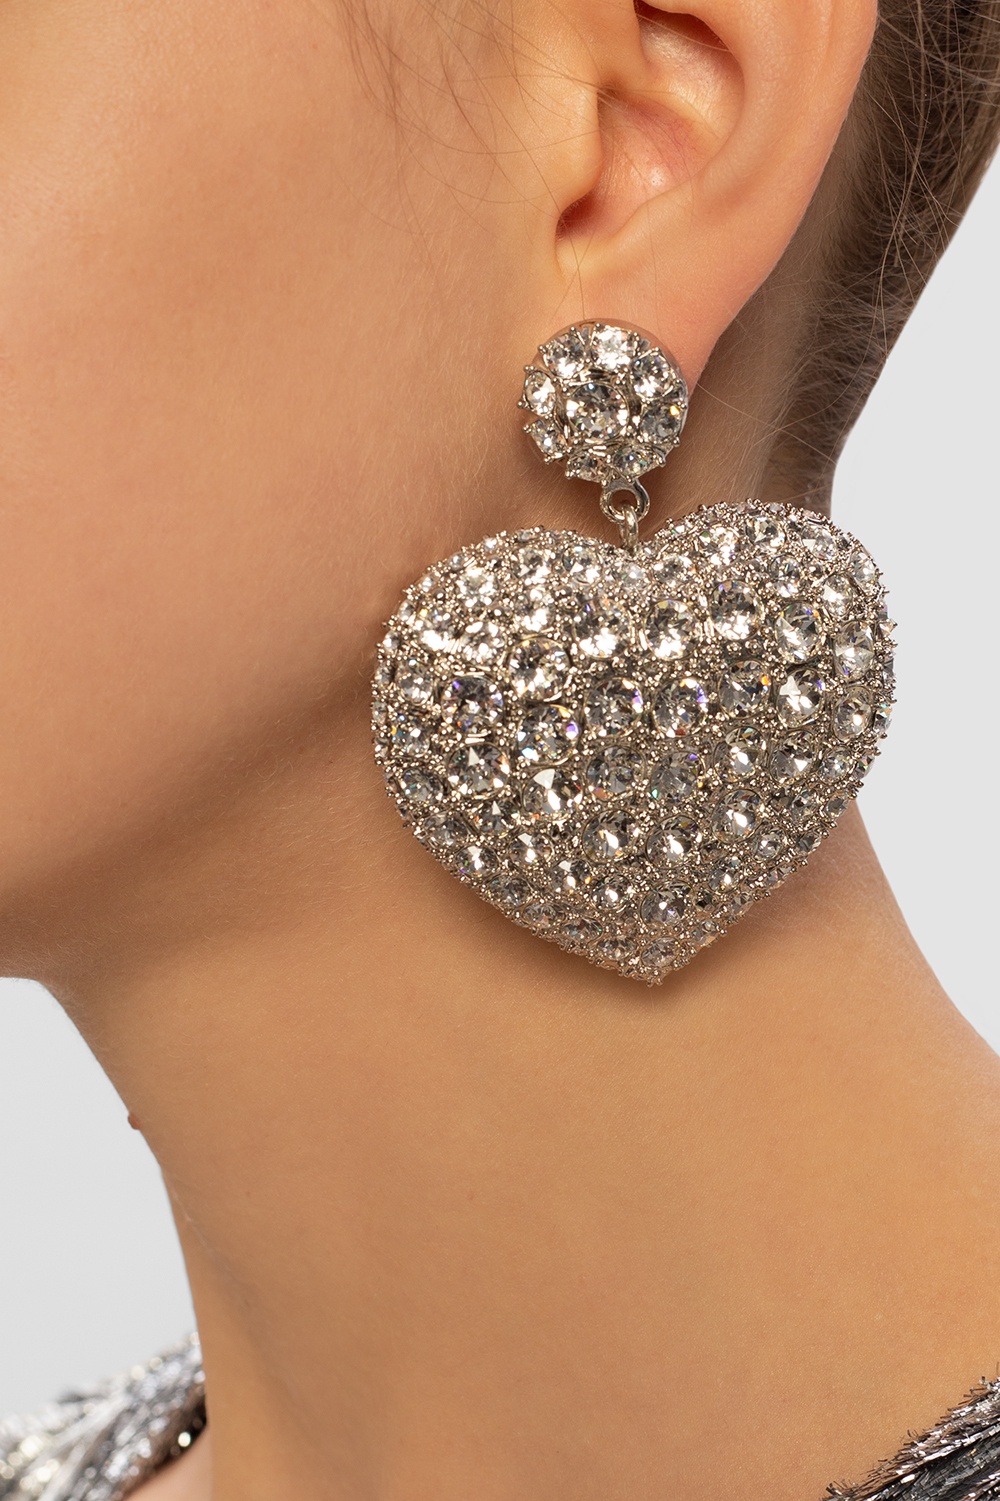 Balenciaga ‘Susi Heart’ earrings